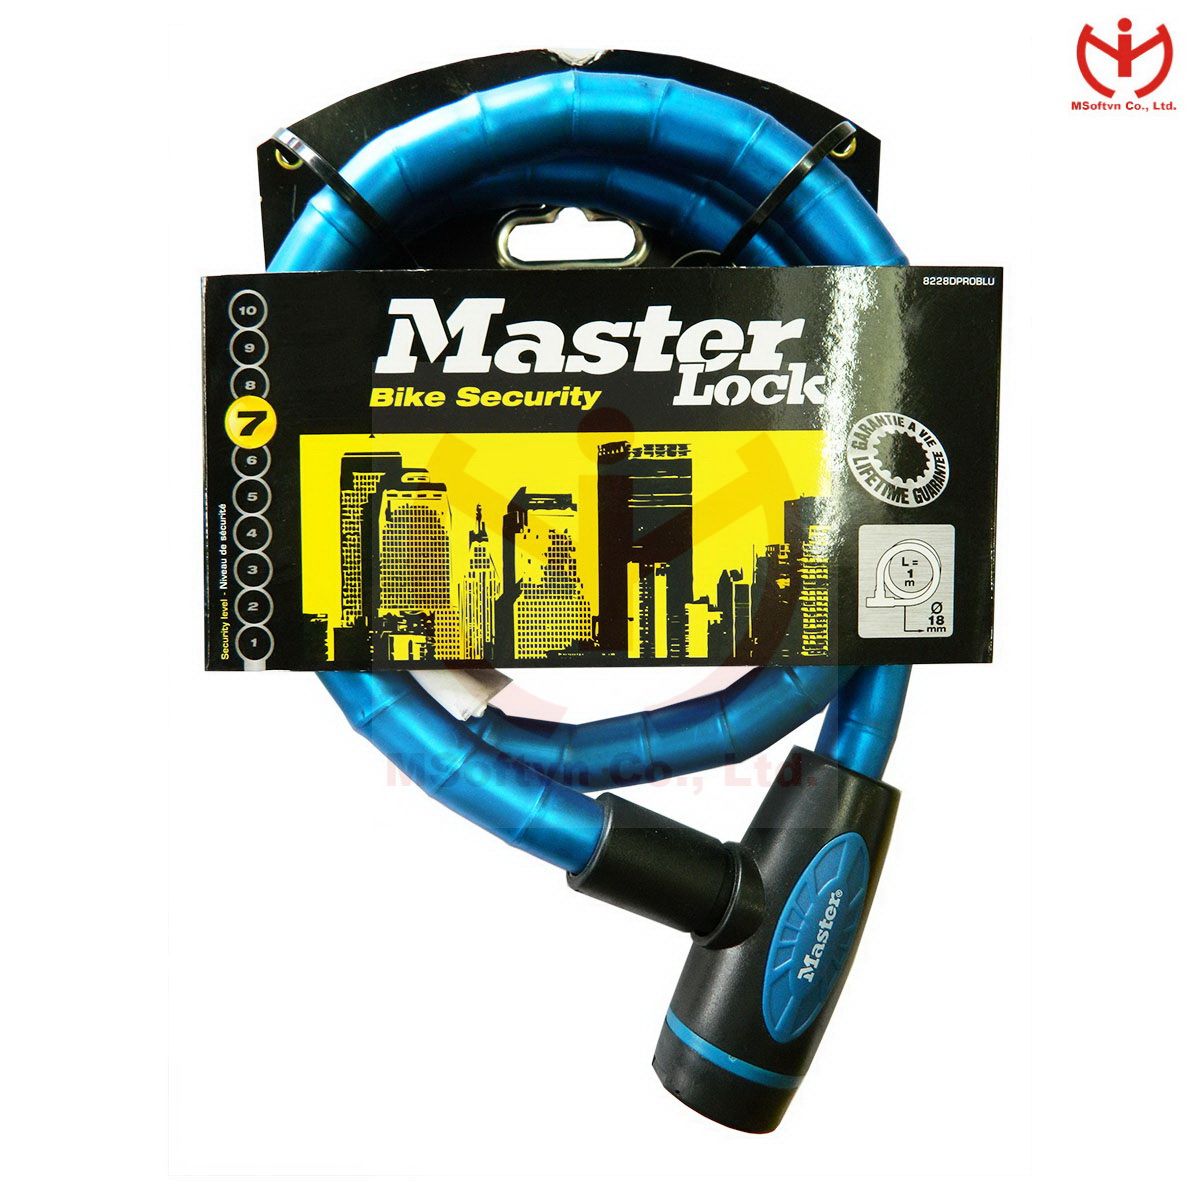 Khóa xe đạp Master Lock 1m x 18mm 8228 EURDPRO - MSOFT